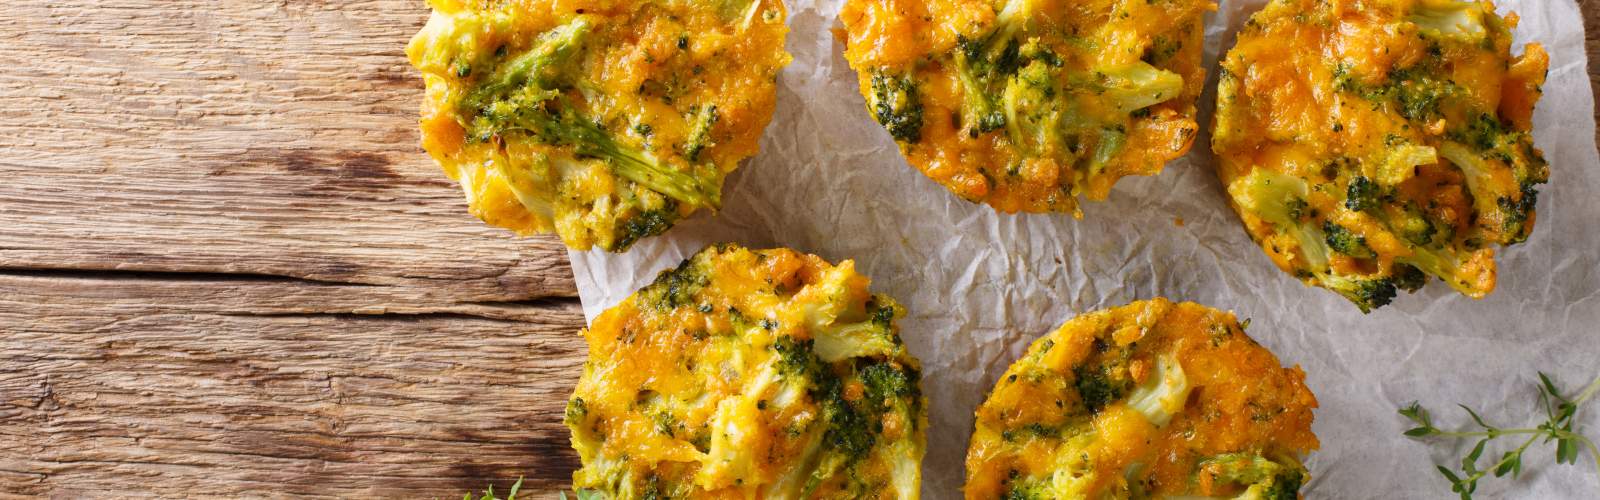 Broccoli Cheddar Breakfast Bake